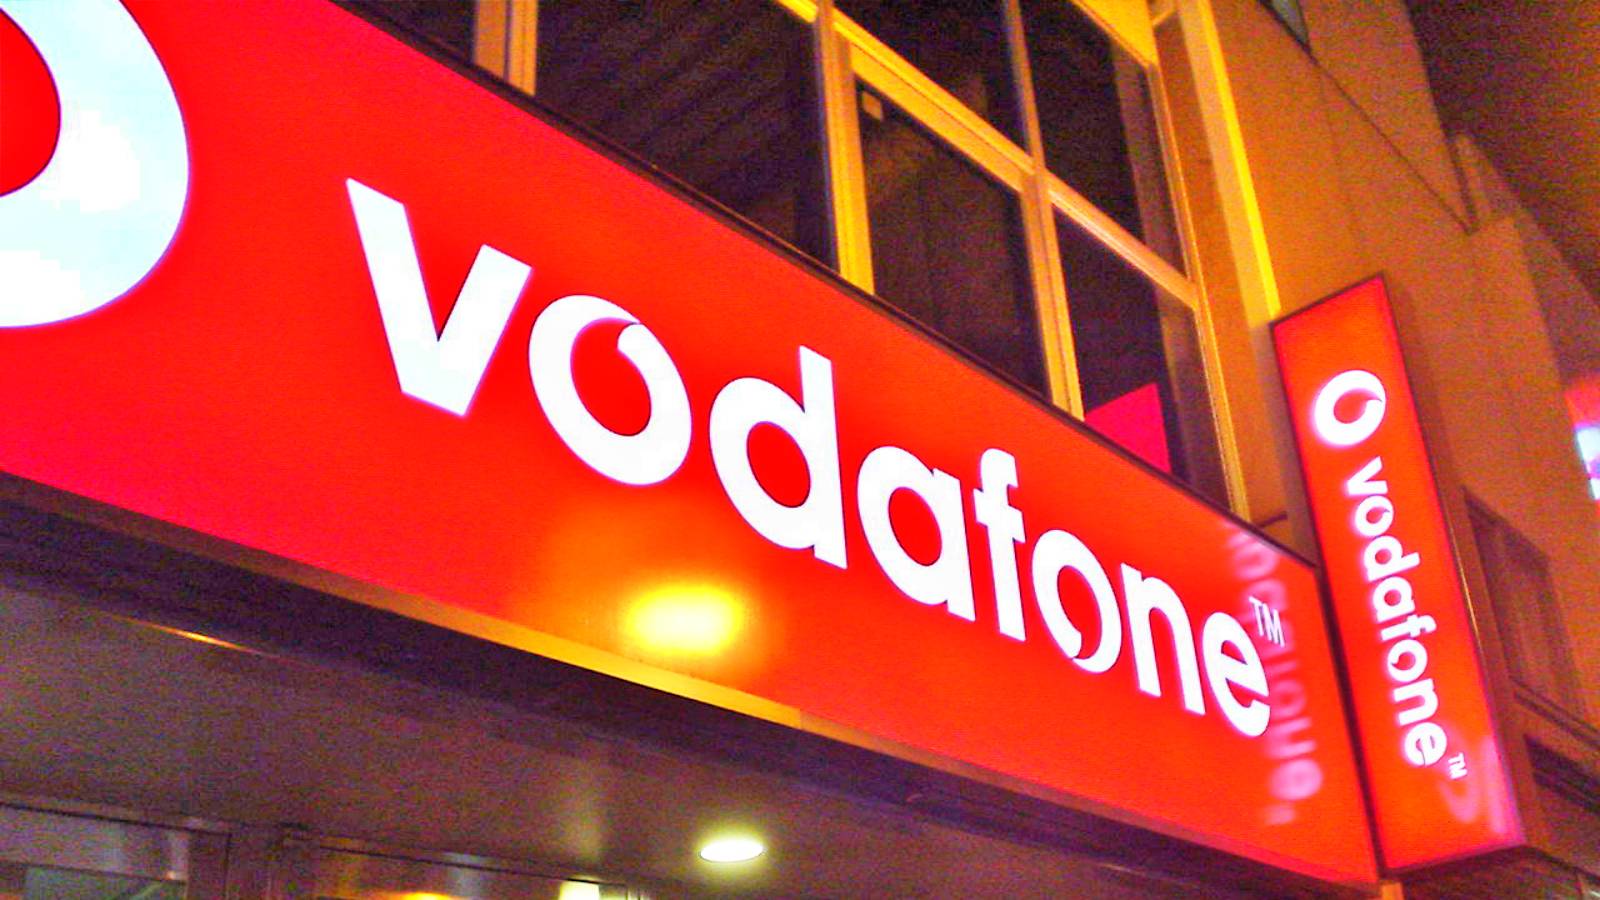 Vodafone-besked til rumænske kunder, alle skal vide